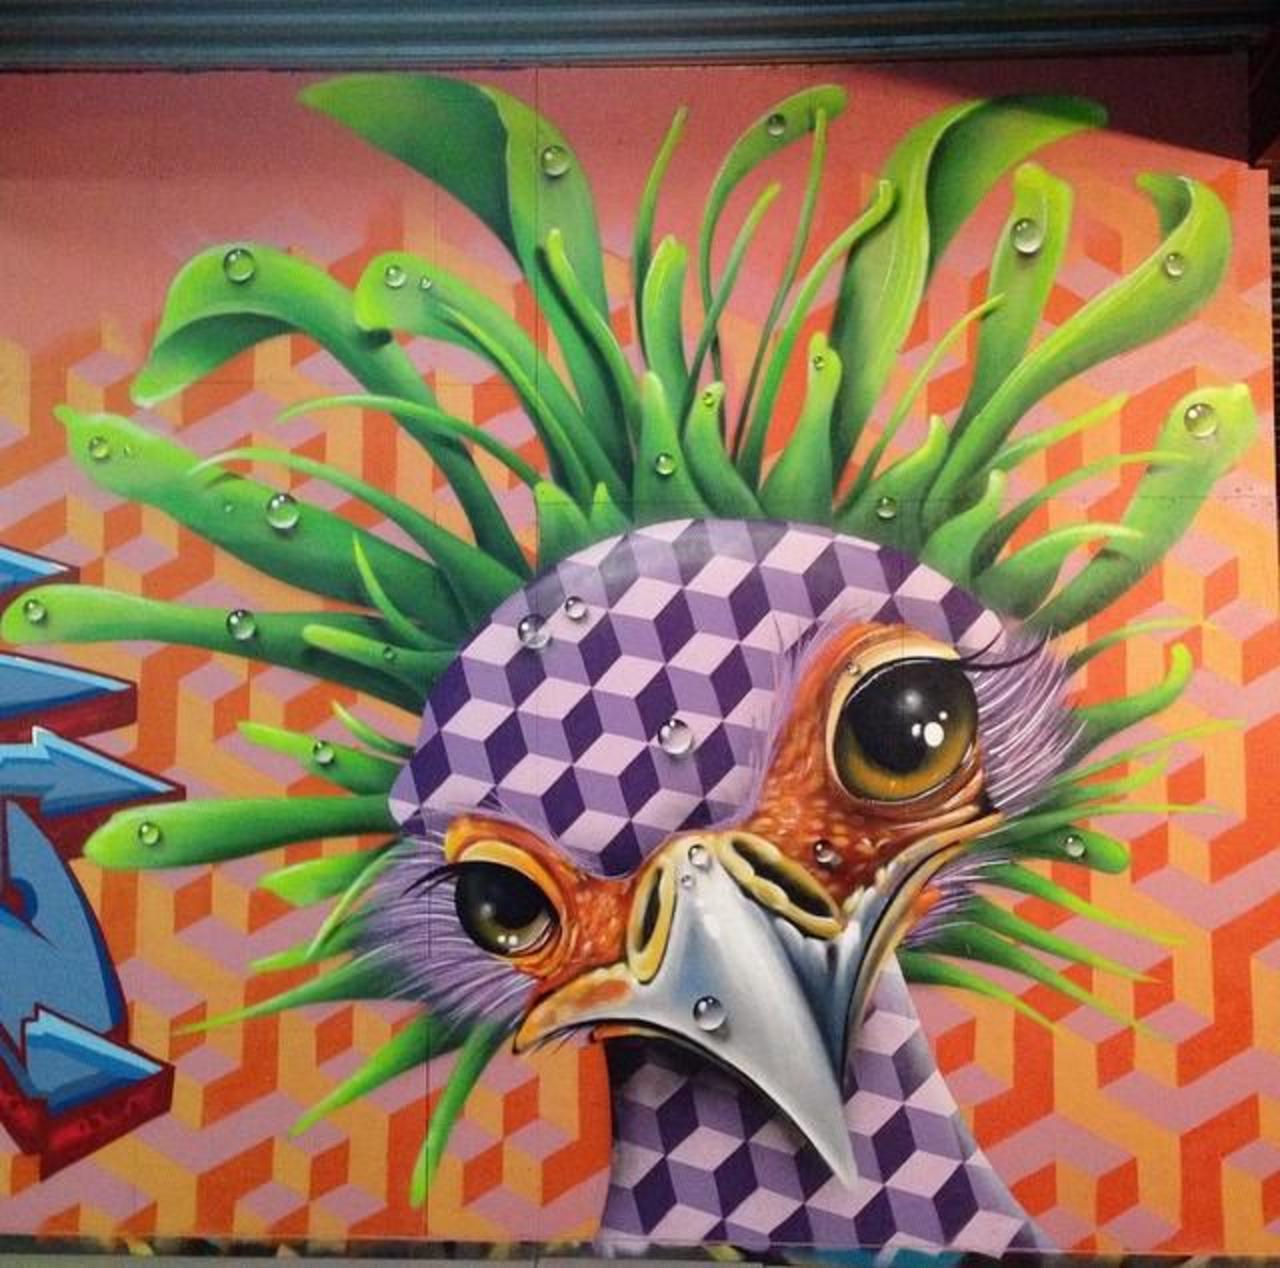 "@GoogleStreetArt: Love this nature in Street Art by the artist TimTimmey 
#art #mural #graffiti #streetart http://t.co/DVTbtzfwdZ"